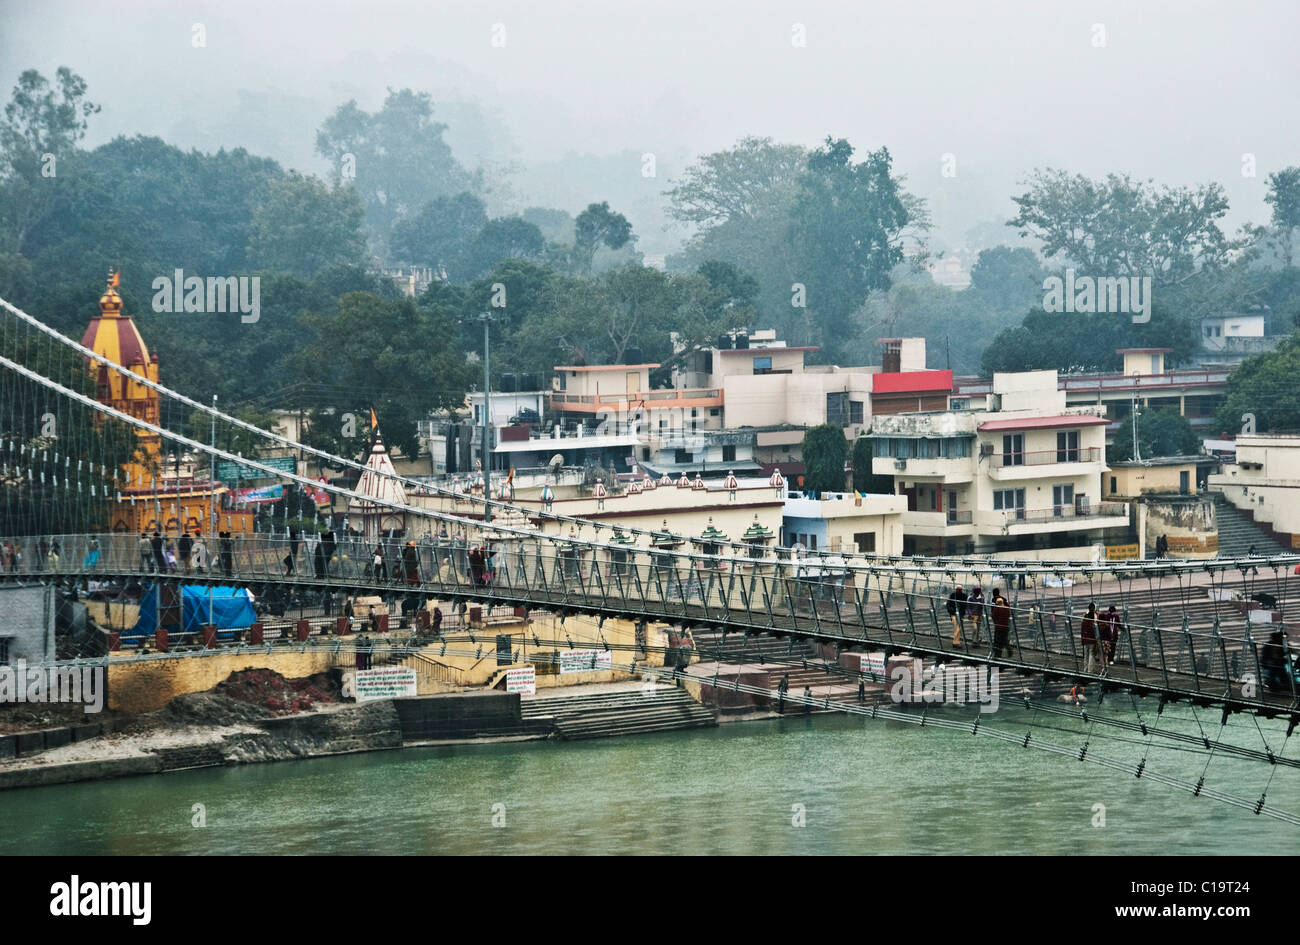 Suspension Bridge à travers une rivière, Lakshman Jhula, Rishikesh, Inde, Uttarakhand Banque D'Images